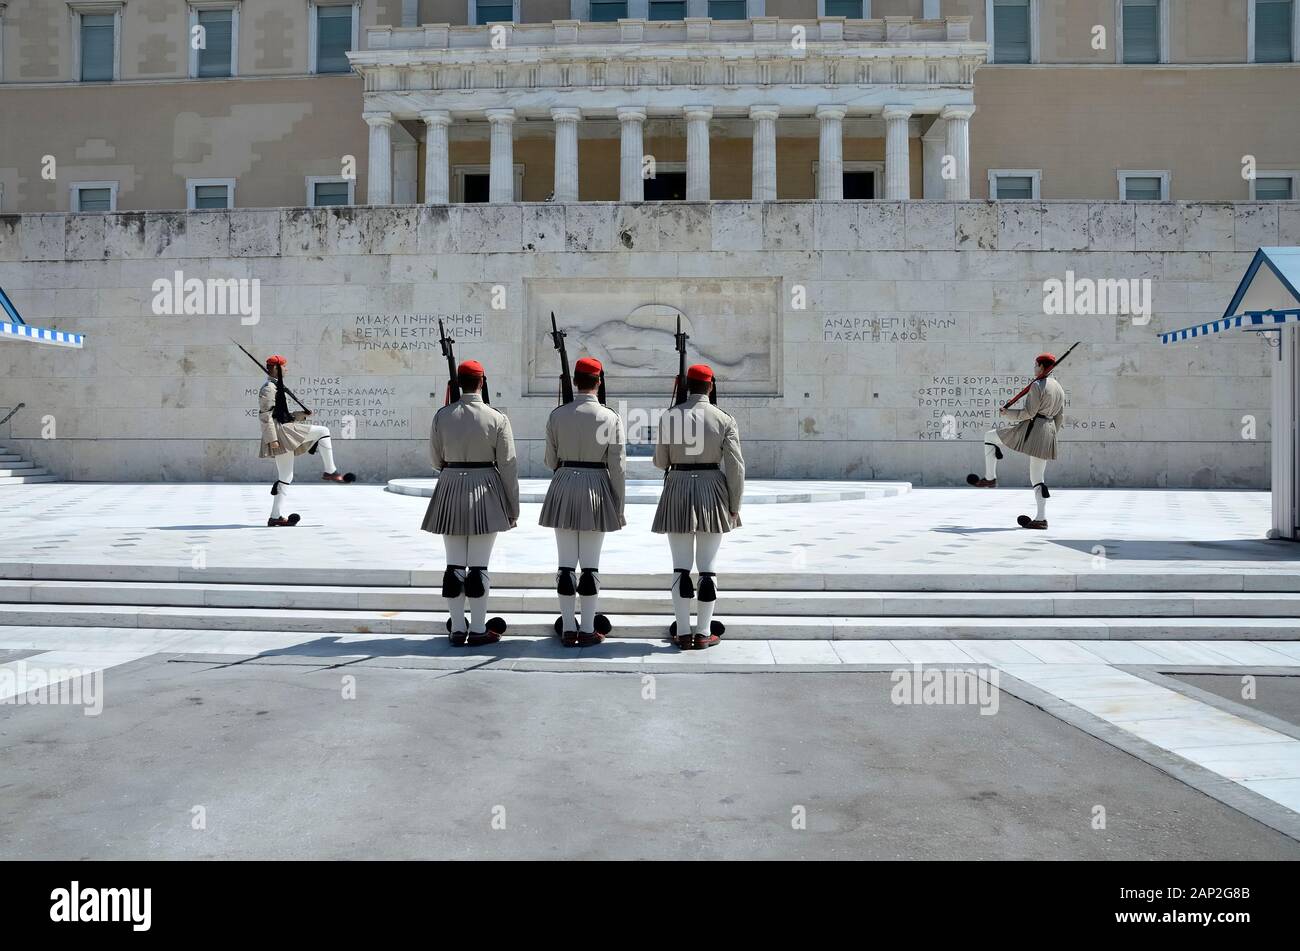 123/5000 euzoni les soldats d'infanterie grecque sélectionnée lors de la relève de la garde devant le palais présidentiel à la place Syntagma Athènes Grèce Banque D'Images